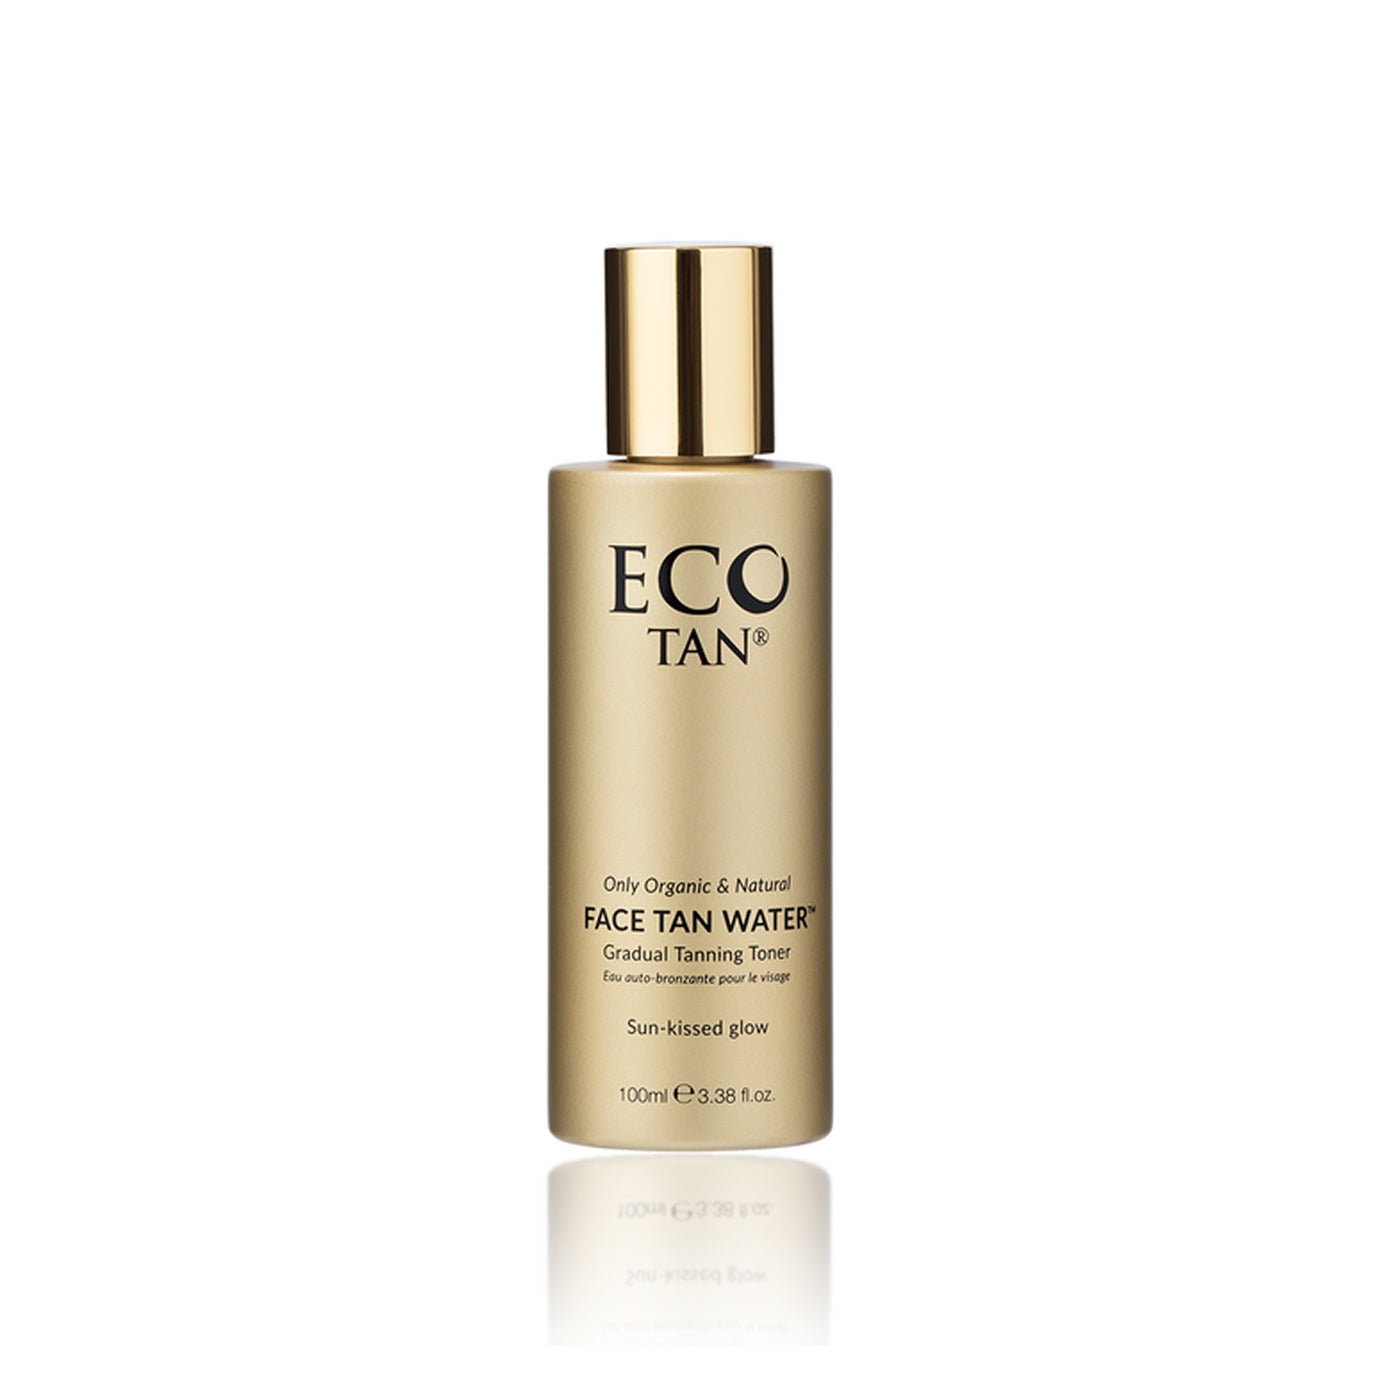 Eco Tan Face Tan Water (100ml)